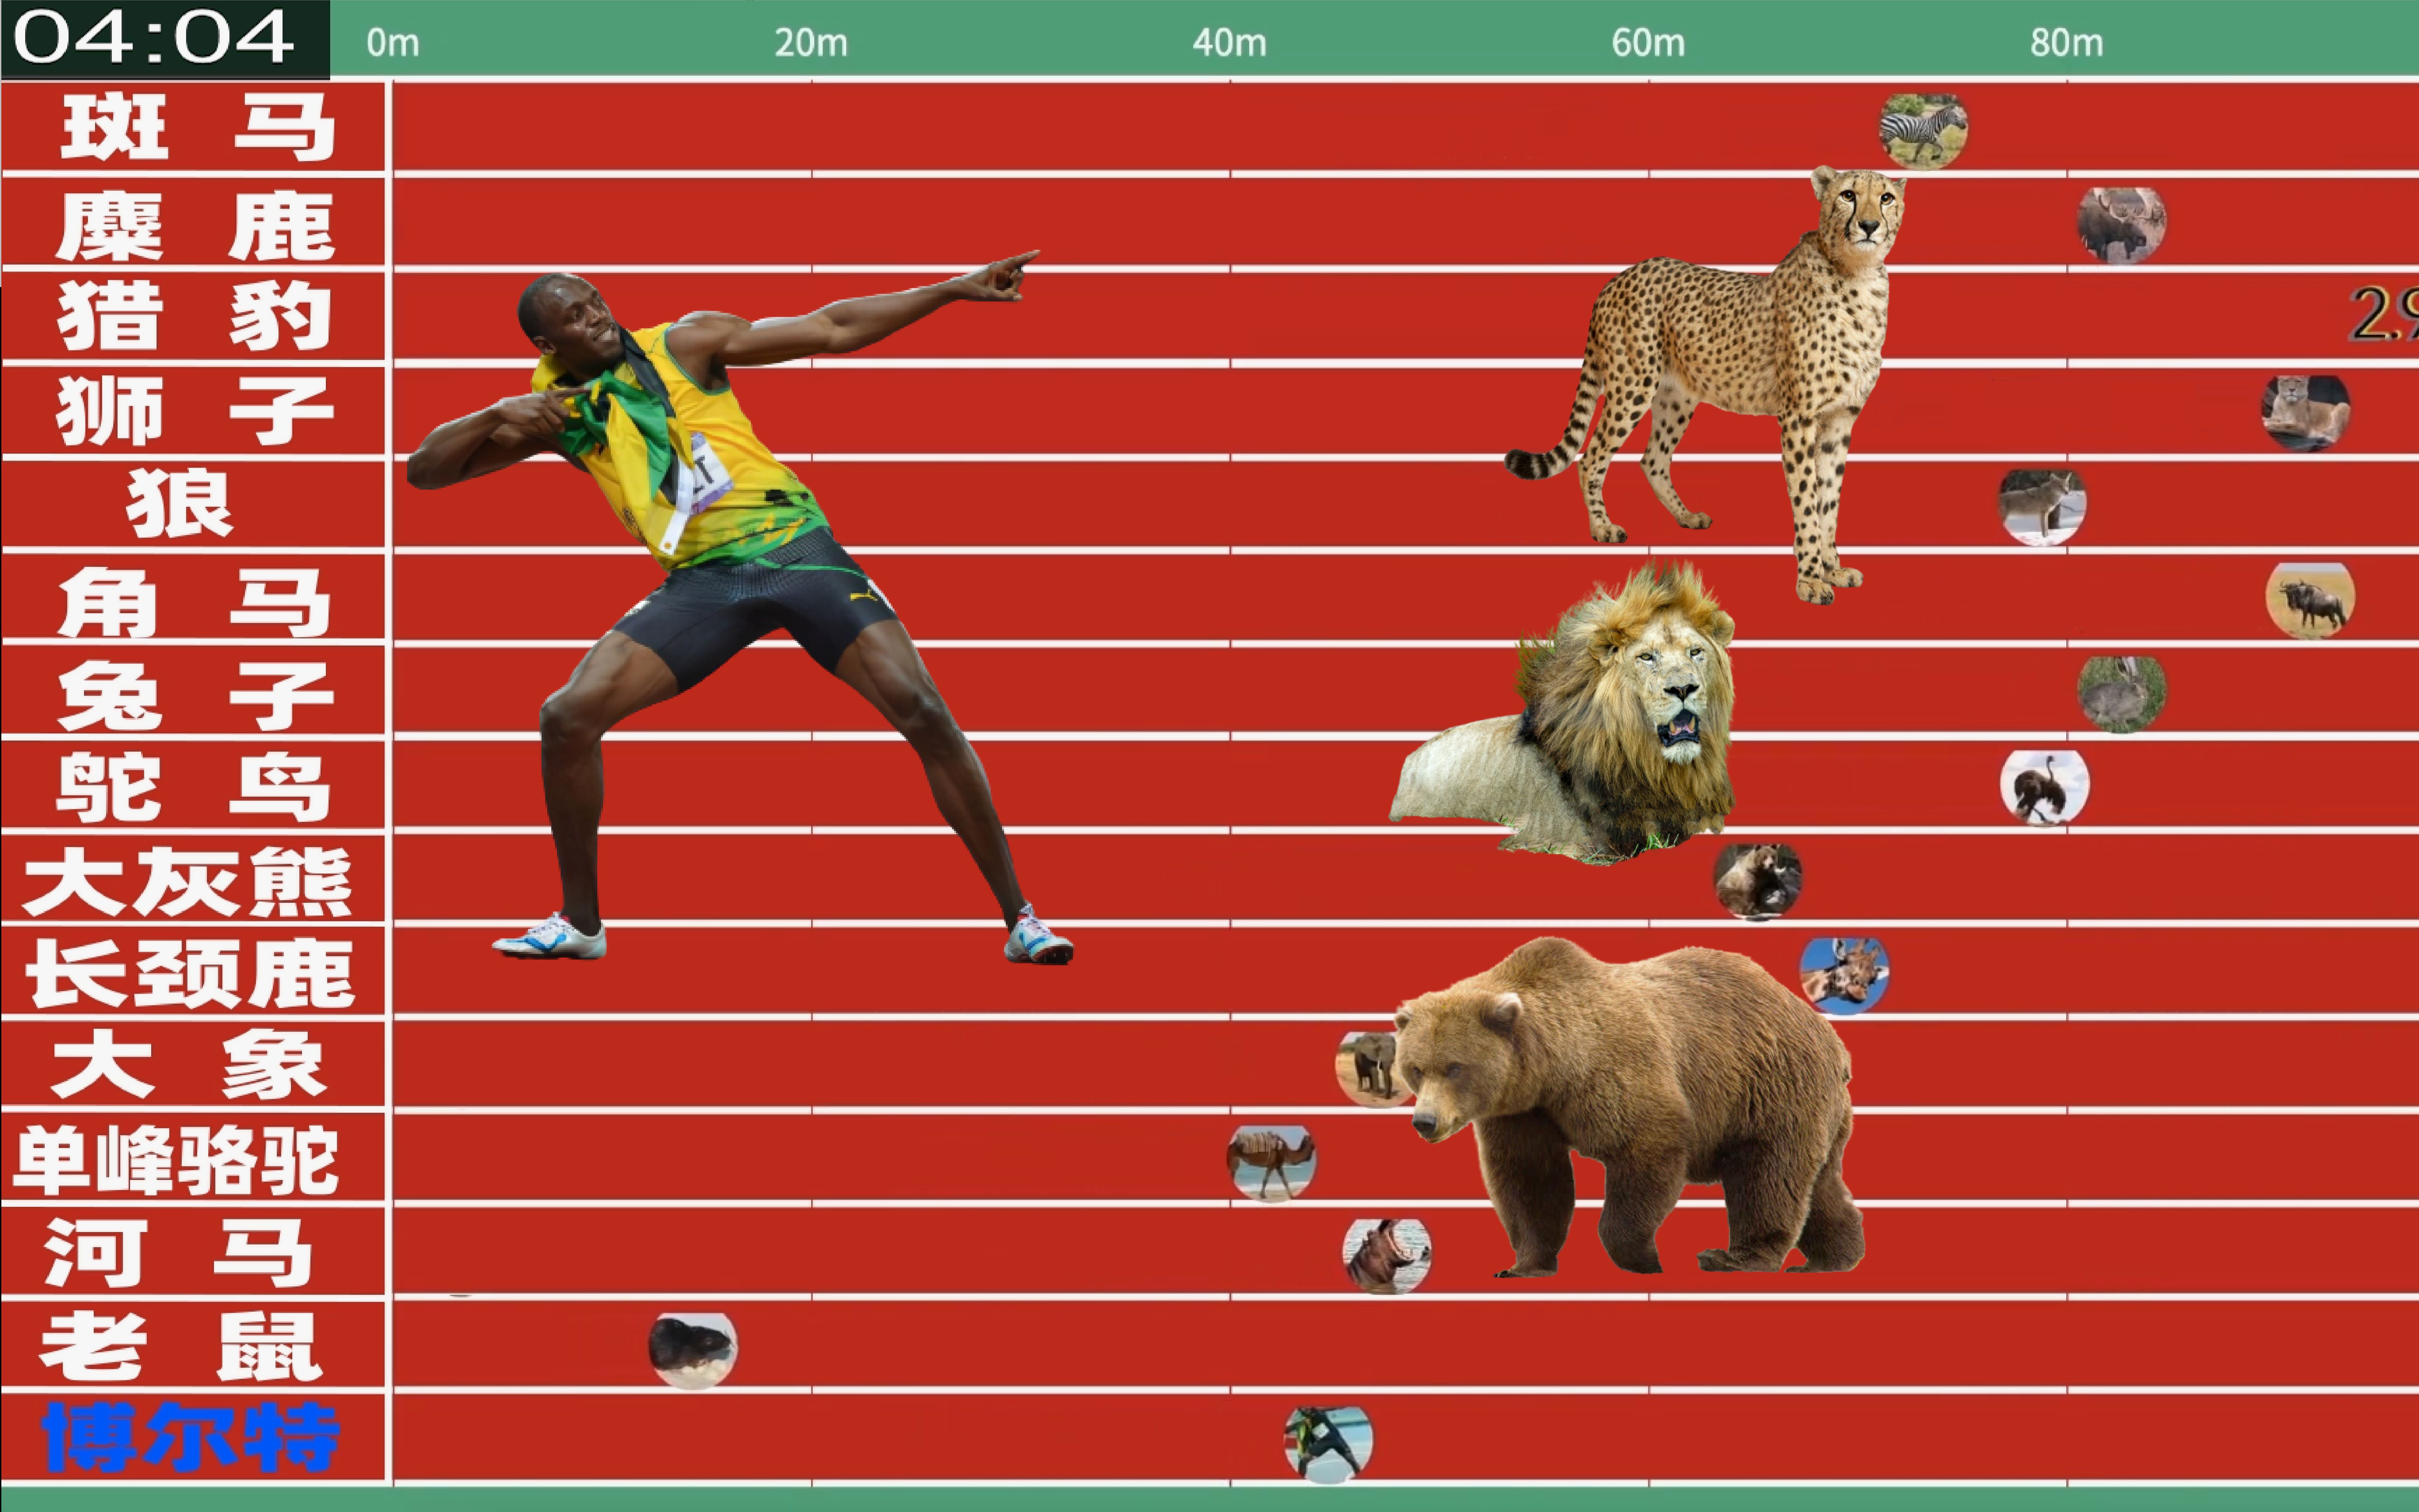 博尔特百米挑战14种动物！人类最快到底与动物差距多少呢？这支视频告诉您！